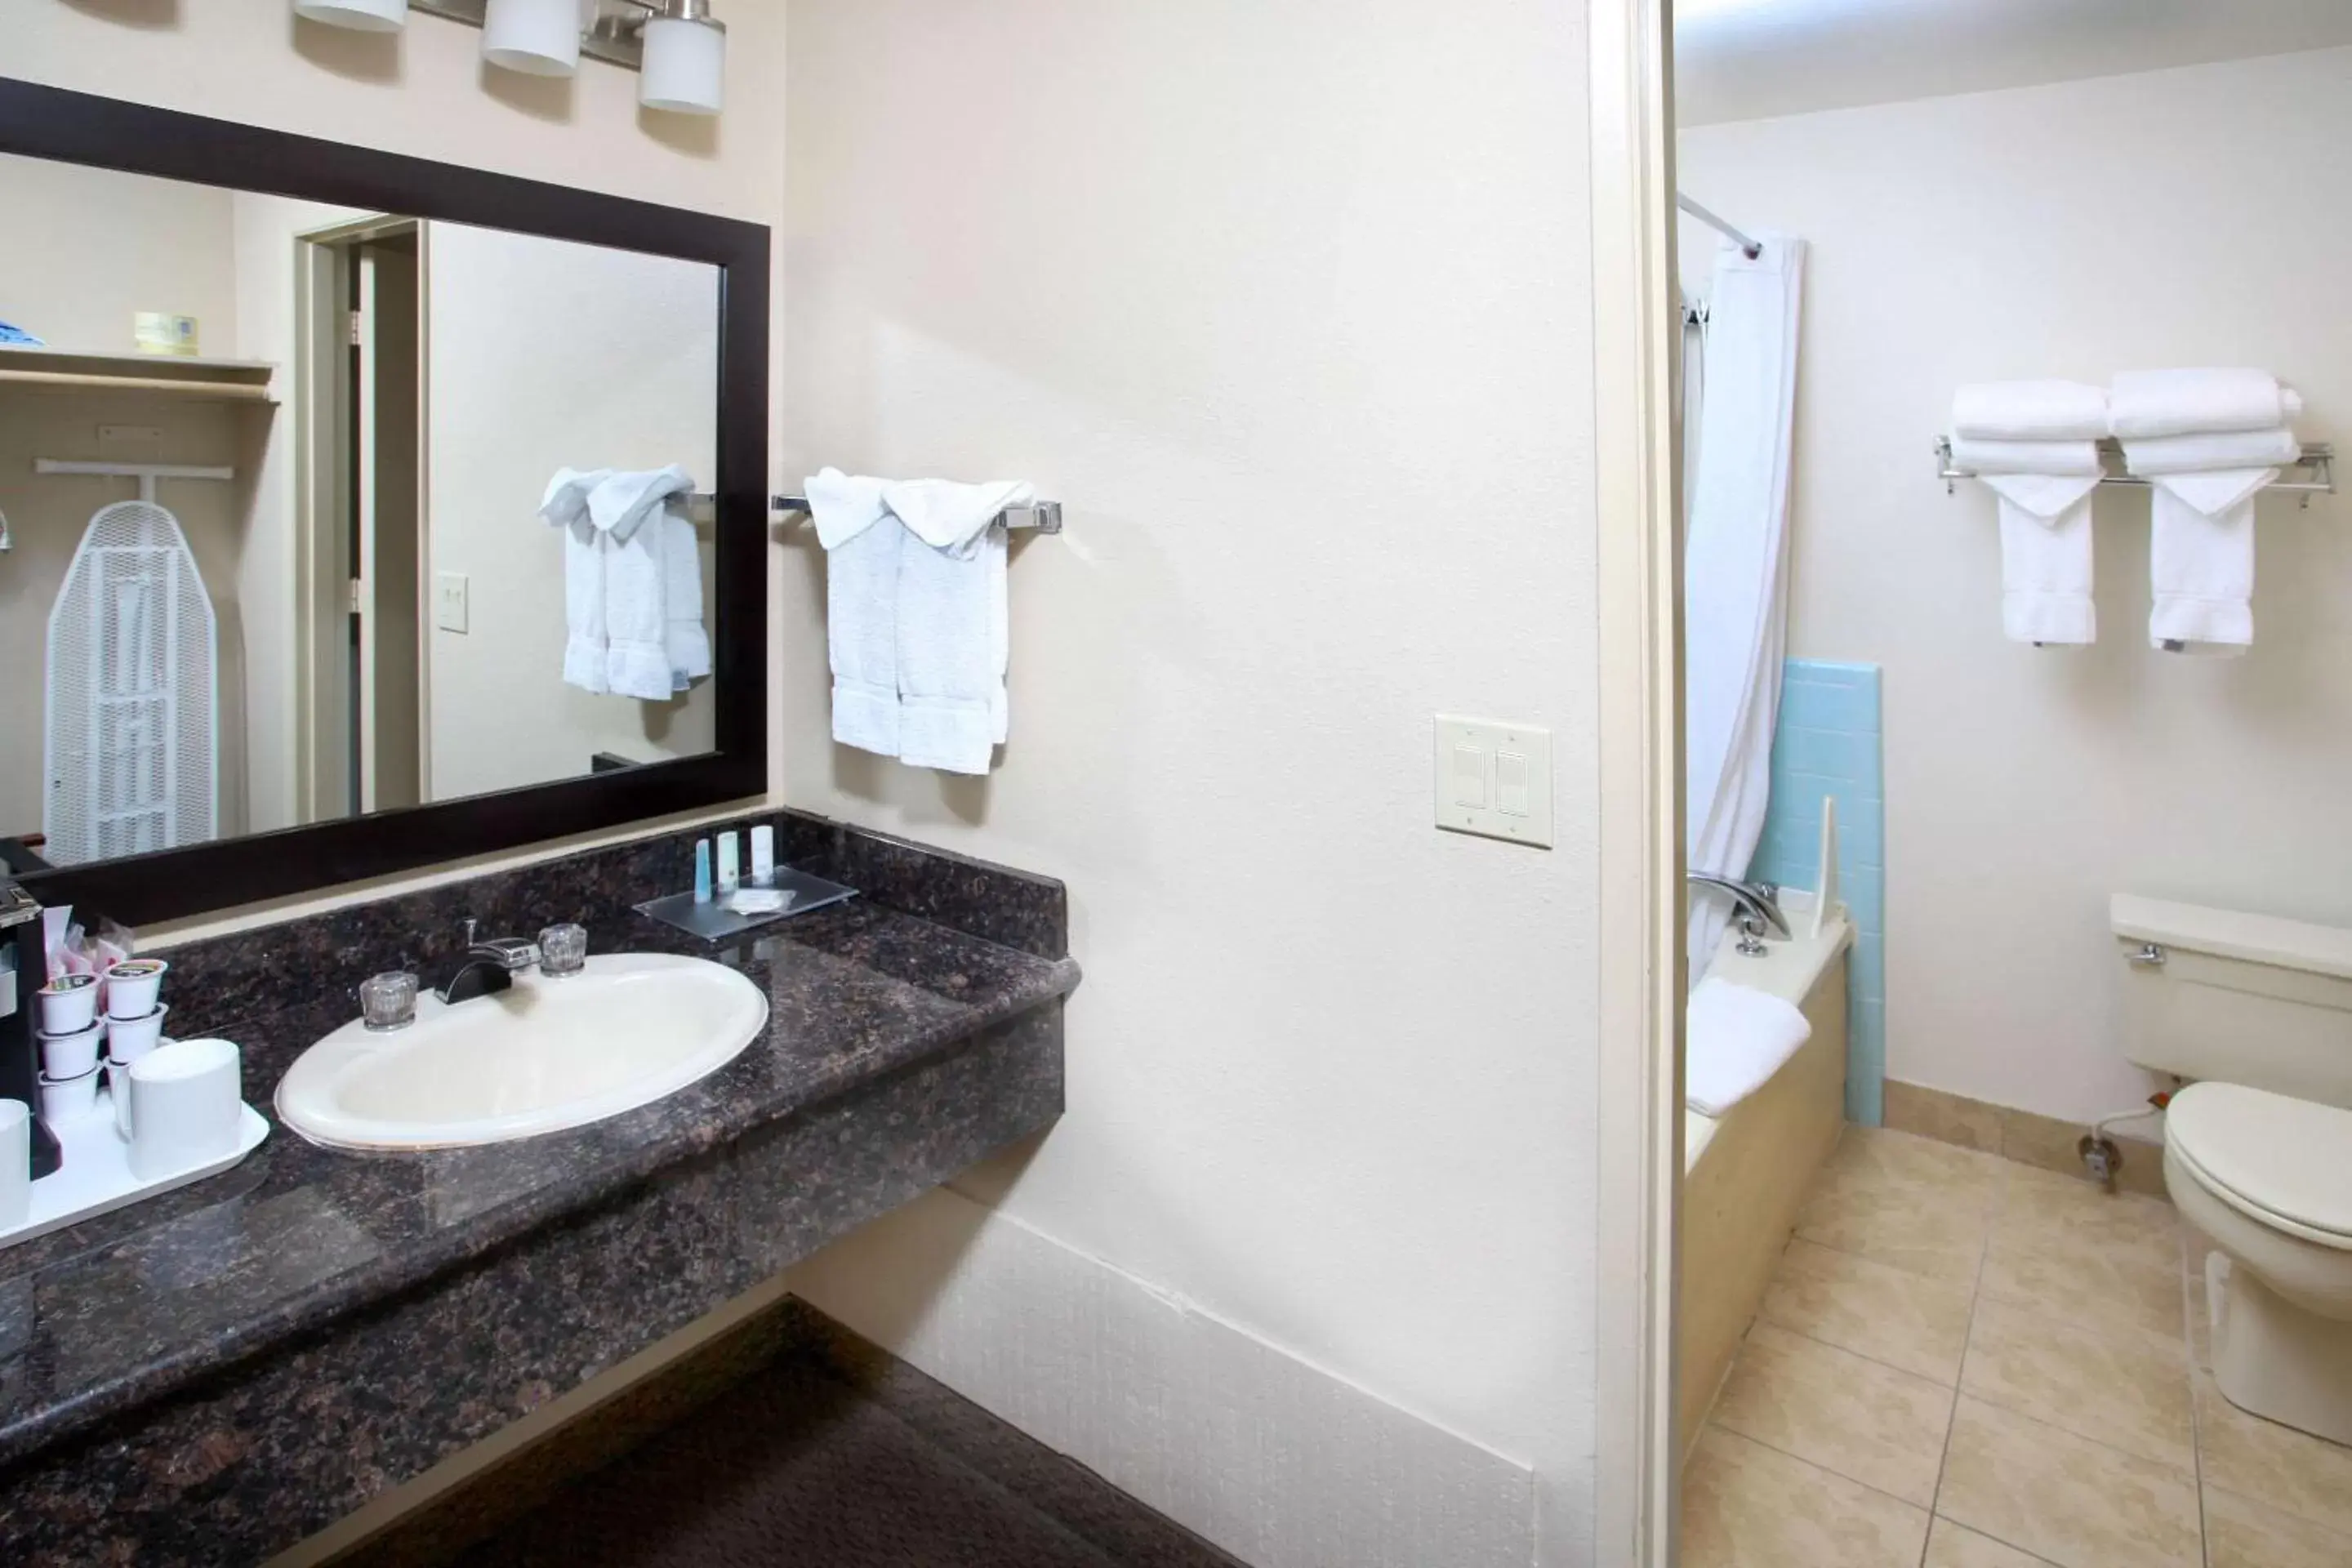 Bedroom, Bathroom in Clarion Inn Surfrider Resort